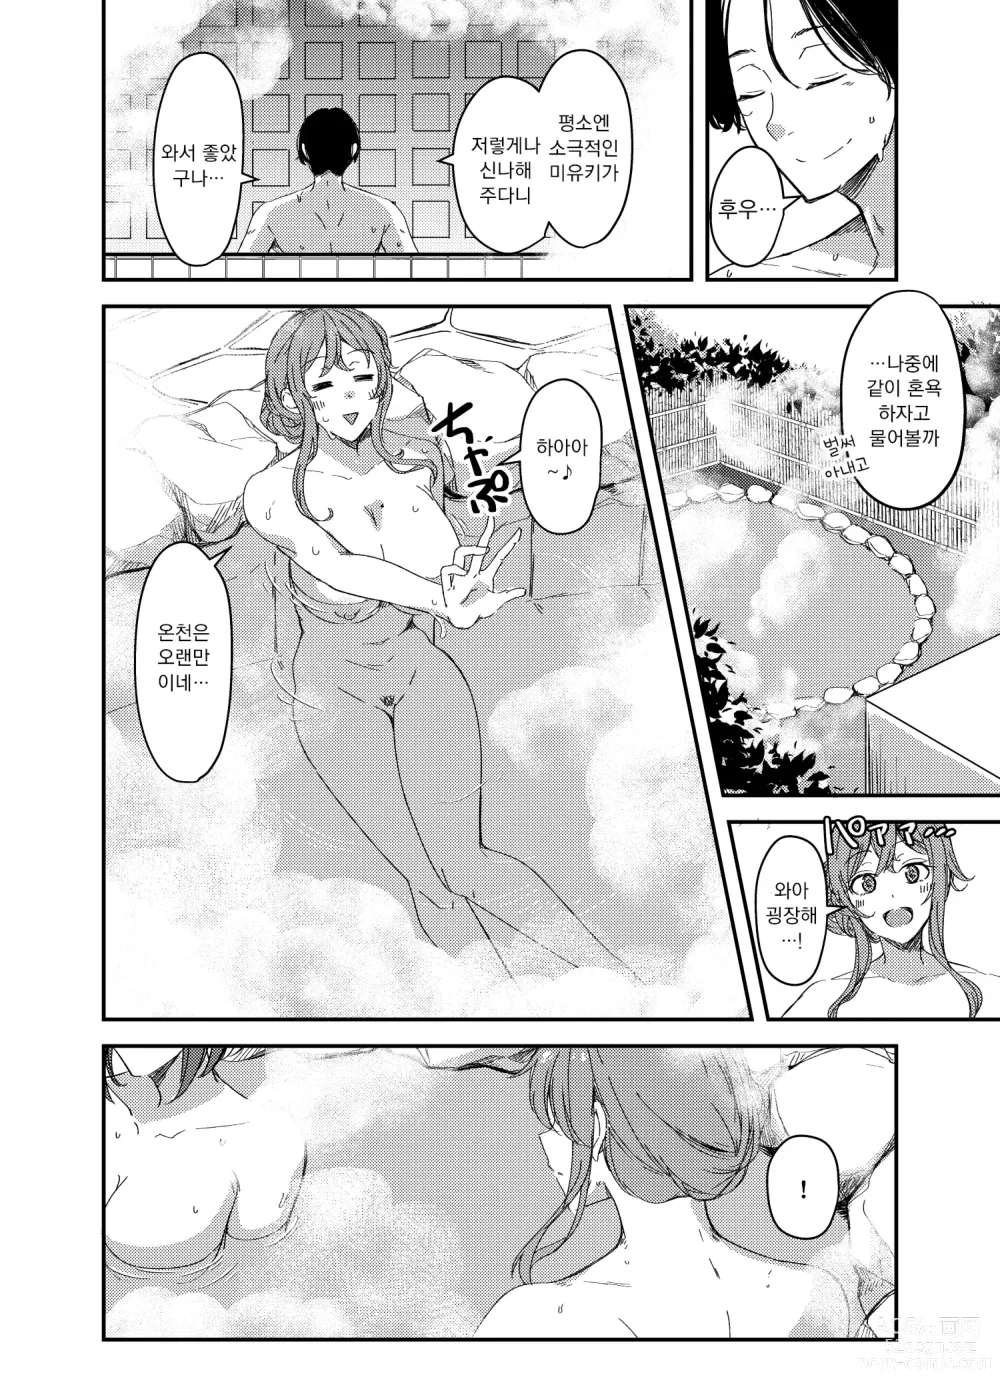 Page 3 of manga 탈취 네토라레 온천여행~빠지고 씌이는 신혼아내~